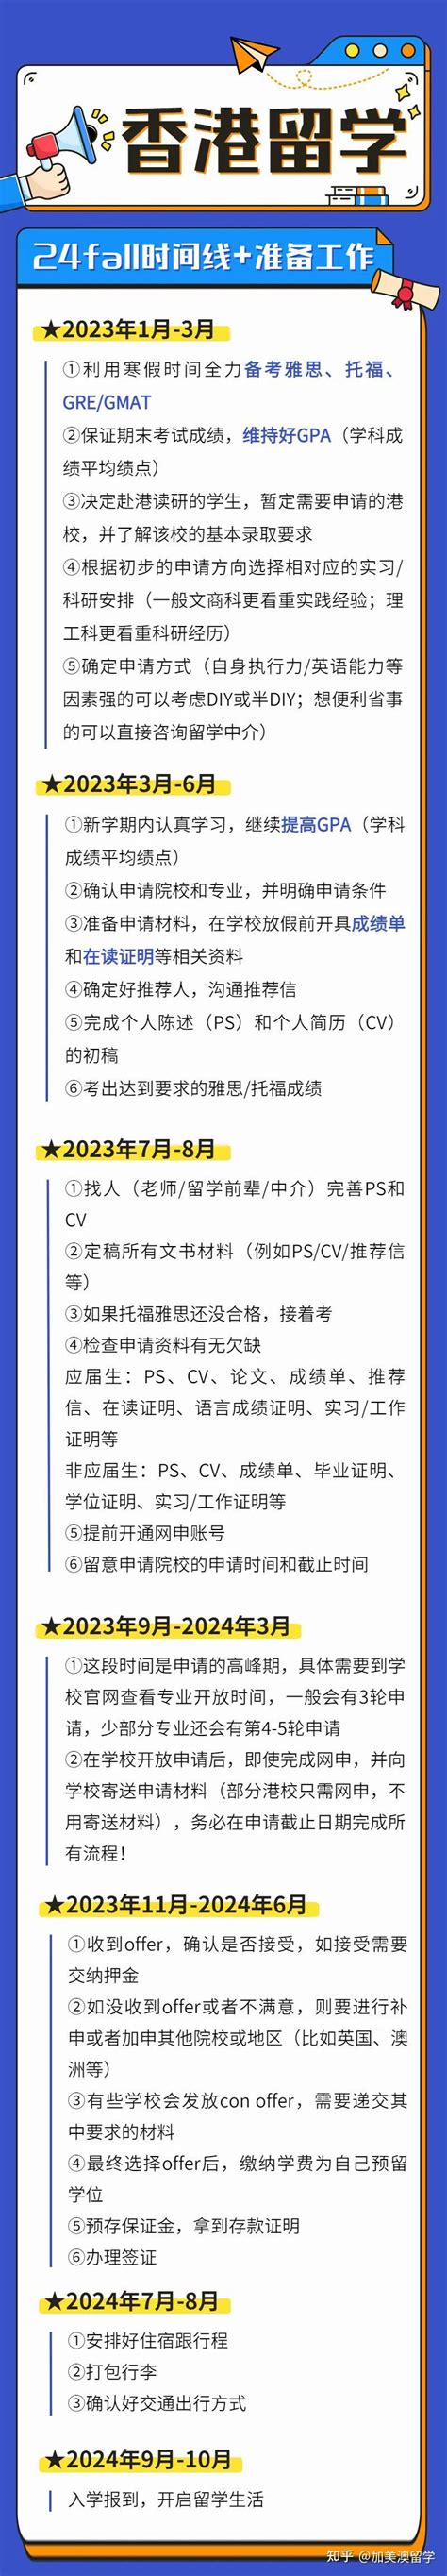 24Fall香港留学申请时间规划！ - 知乎